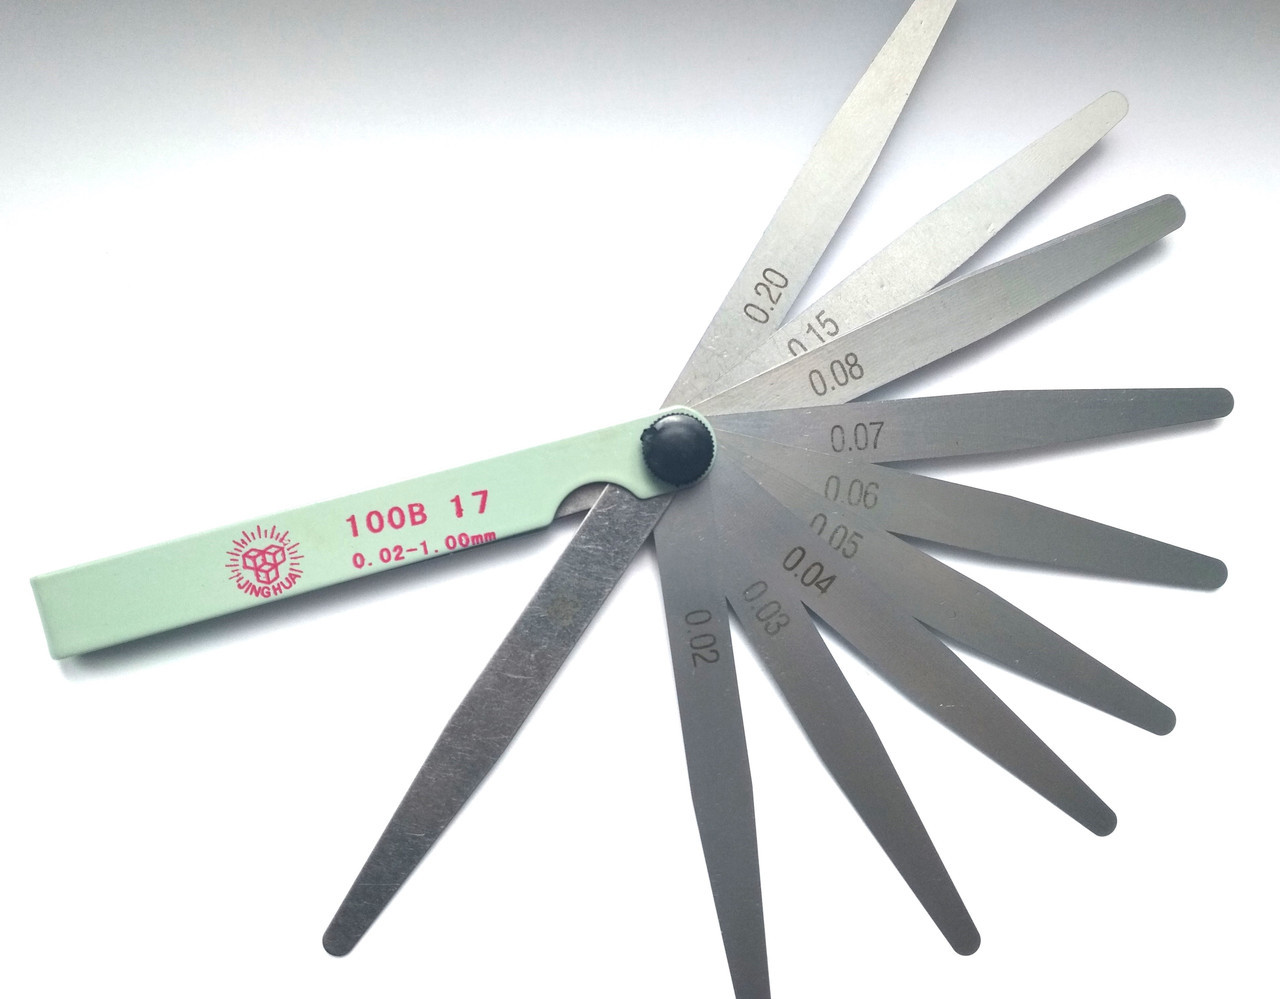 Набір щупів для вимірювання зазорів Jinghua 100B 17 (0,02-1.00)